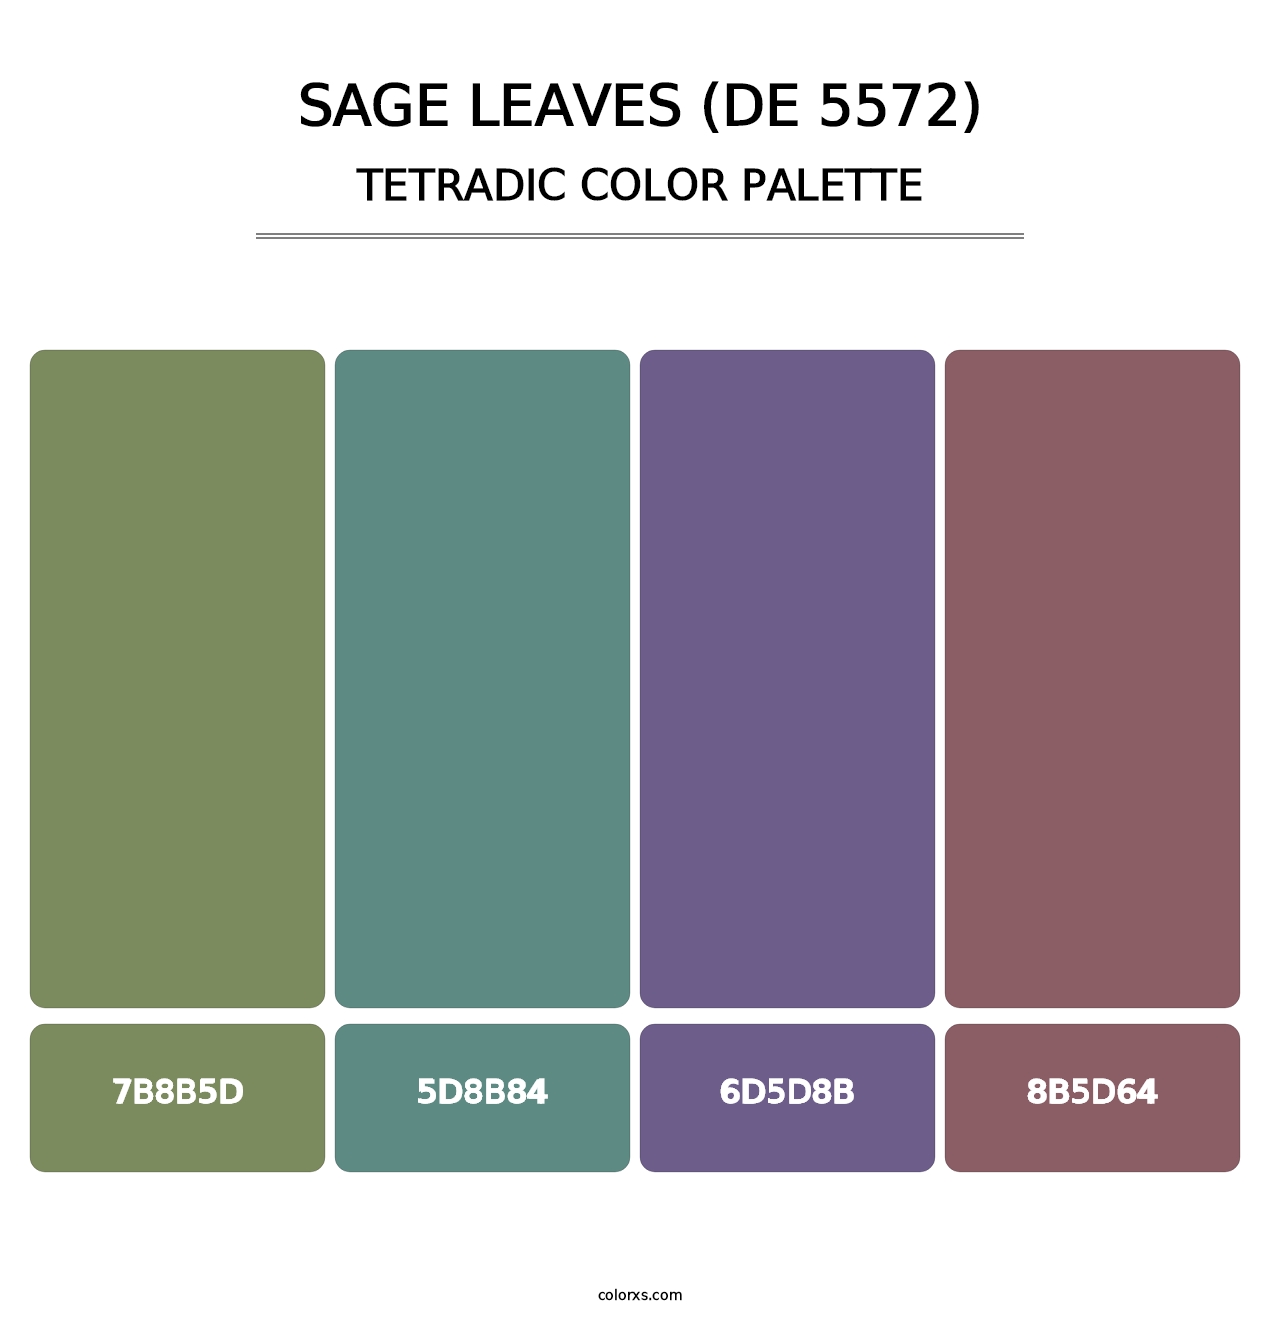 Sage Leaves (DE 5572) - Tetradic Color Palette